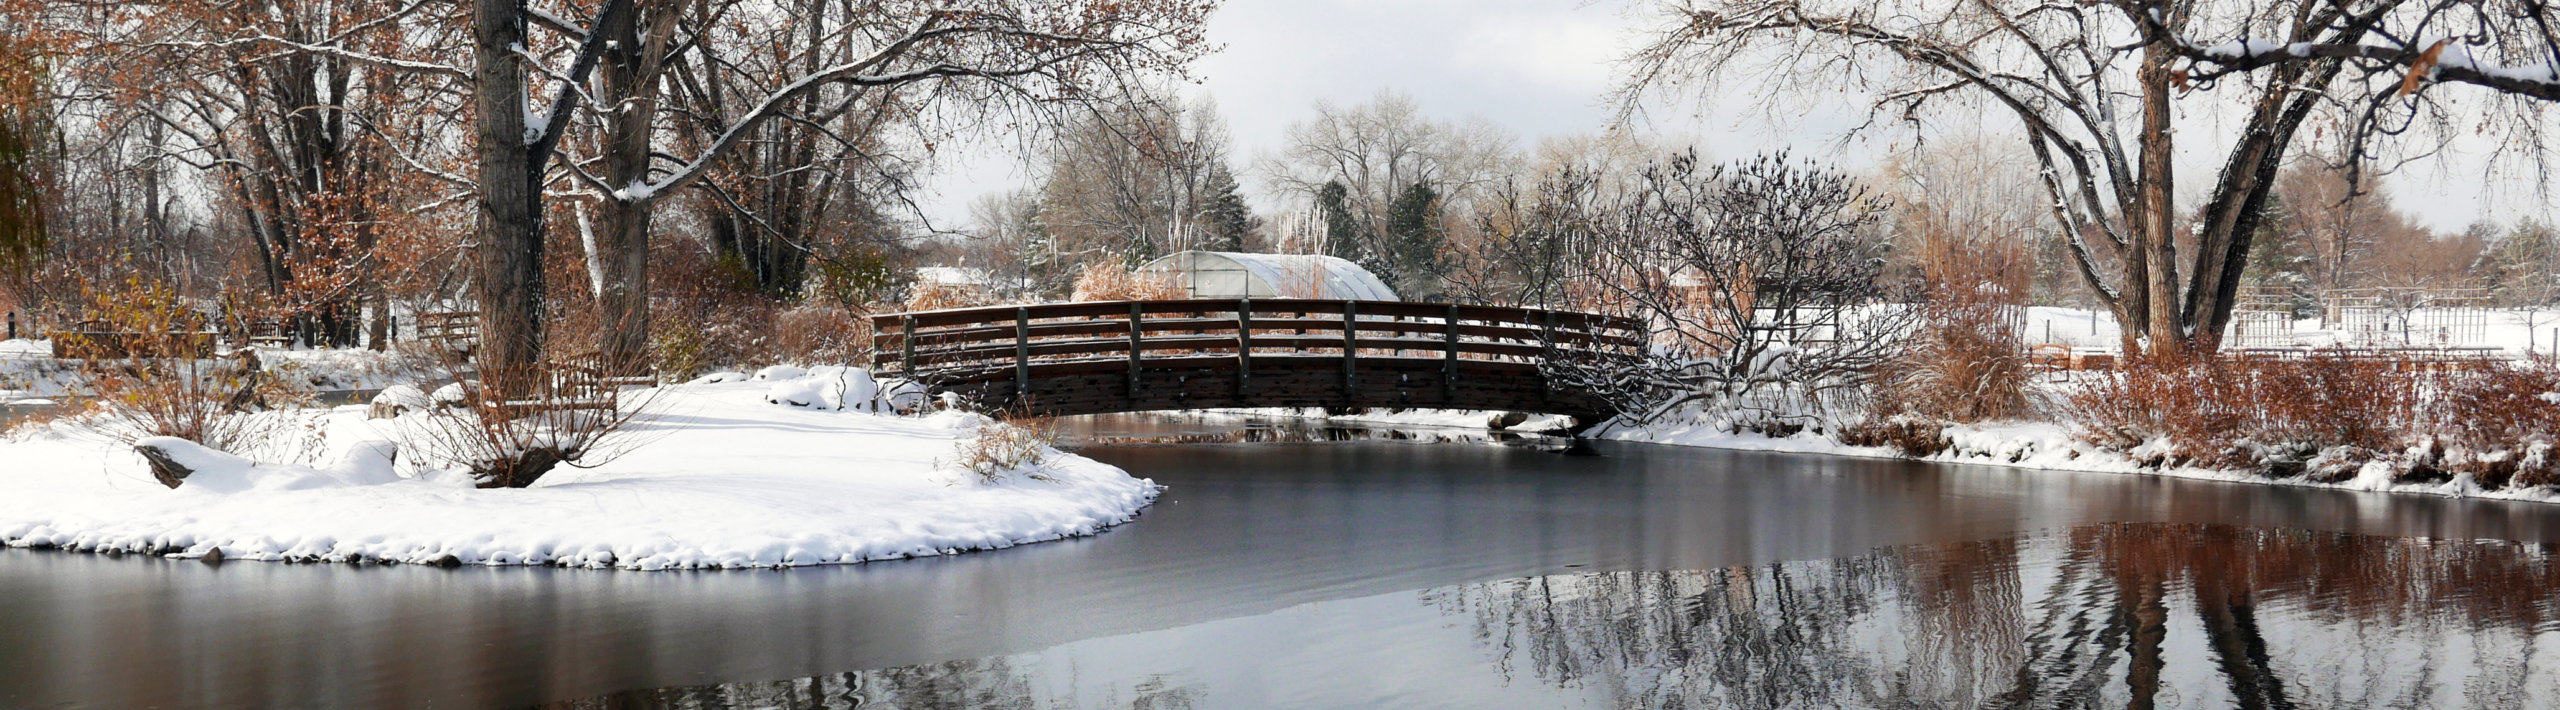 A bridge cuts across a frozen lake.